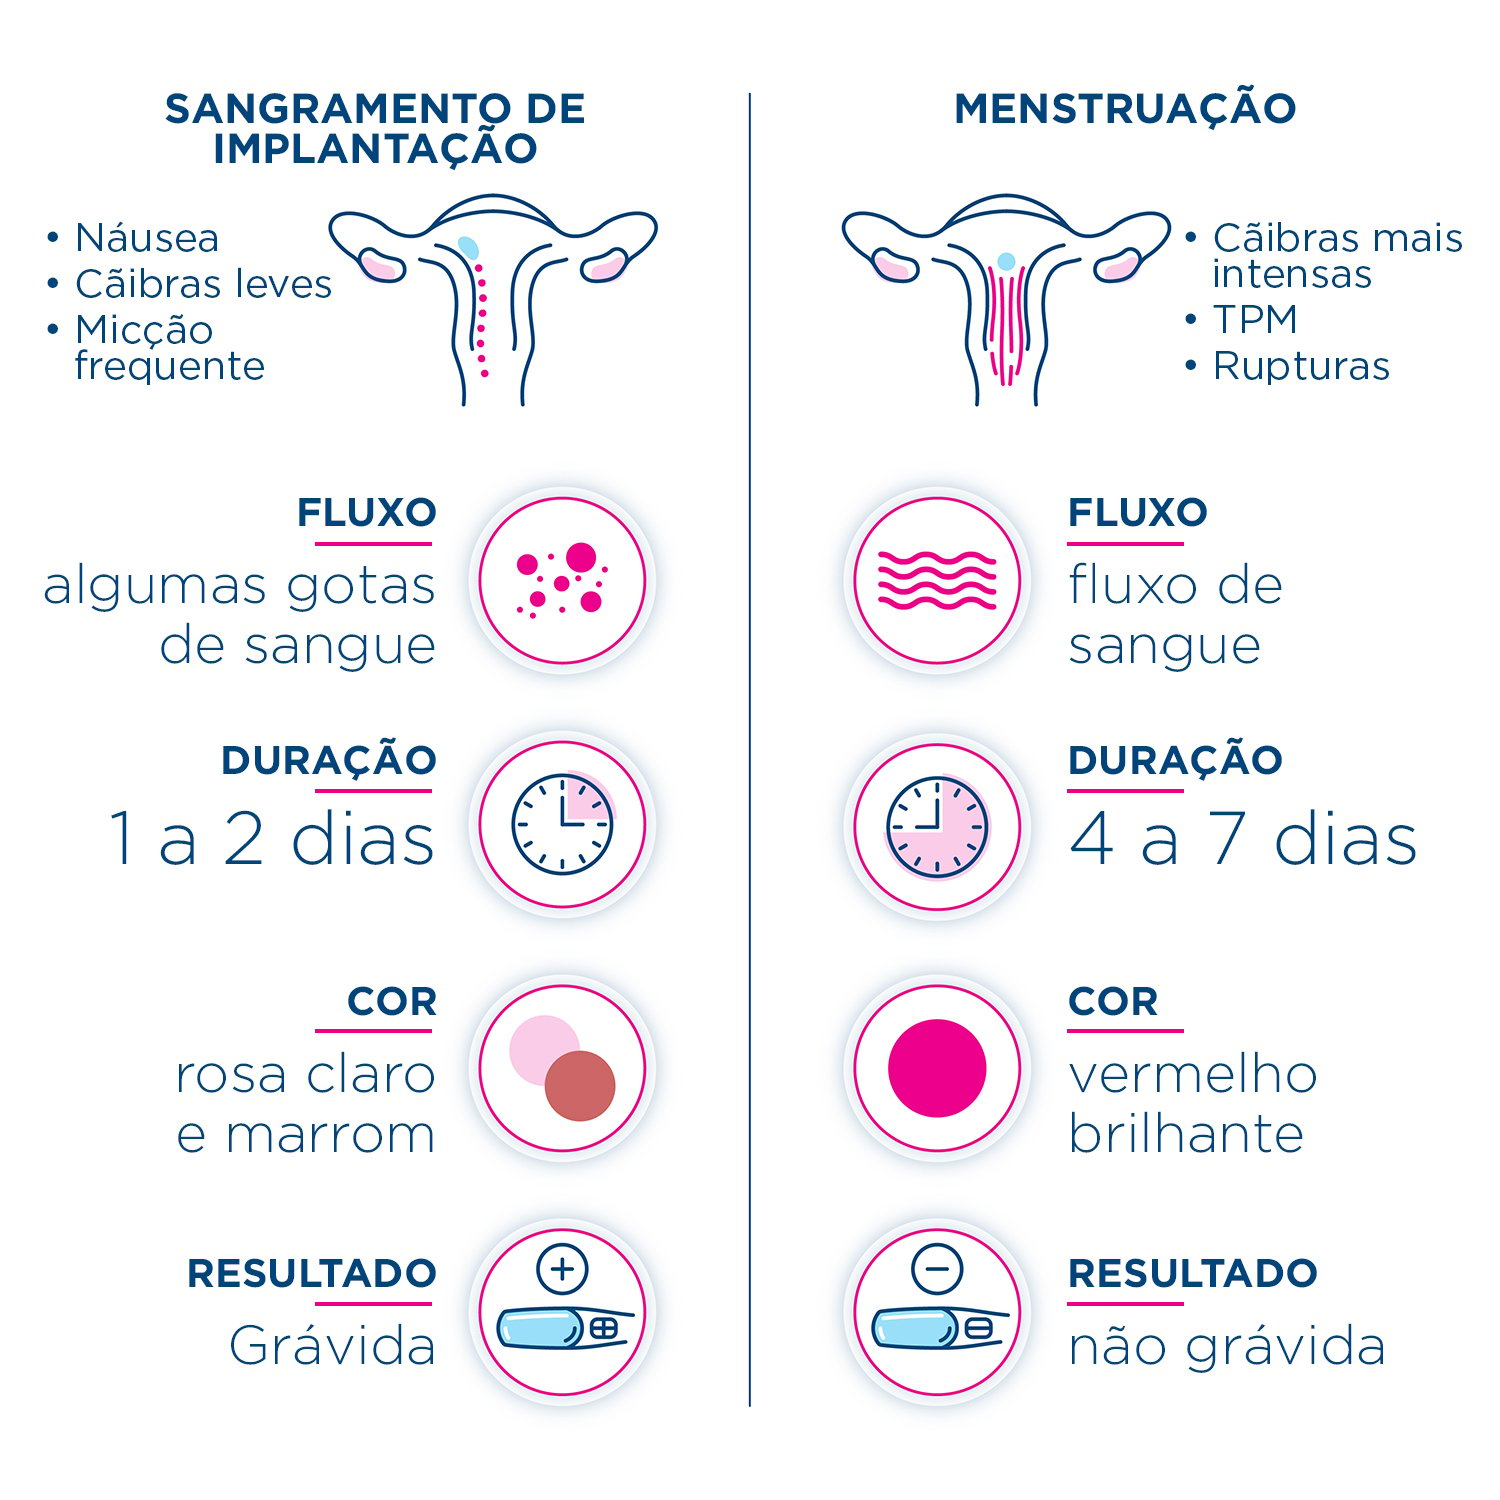 Infográfico comparando os sinais e sintomas para dizer a diferença entre sangramento de implantação e seu período.